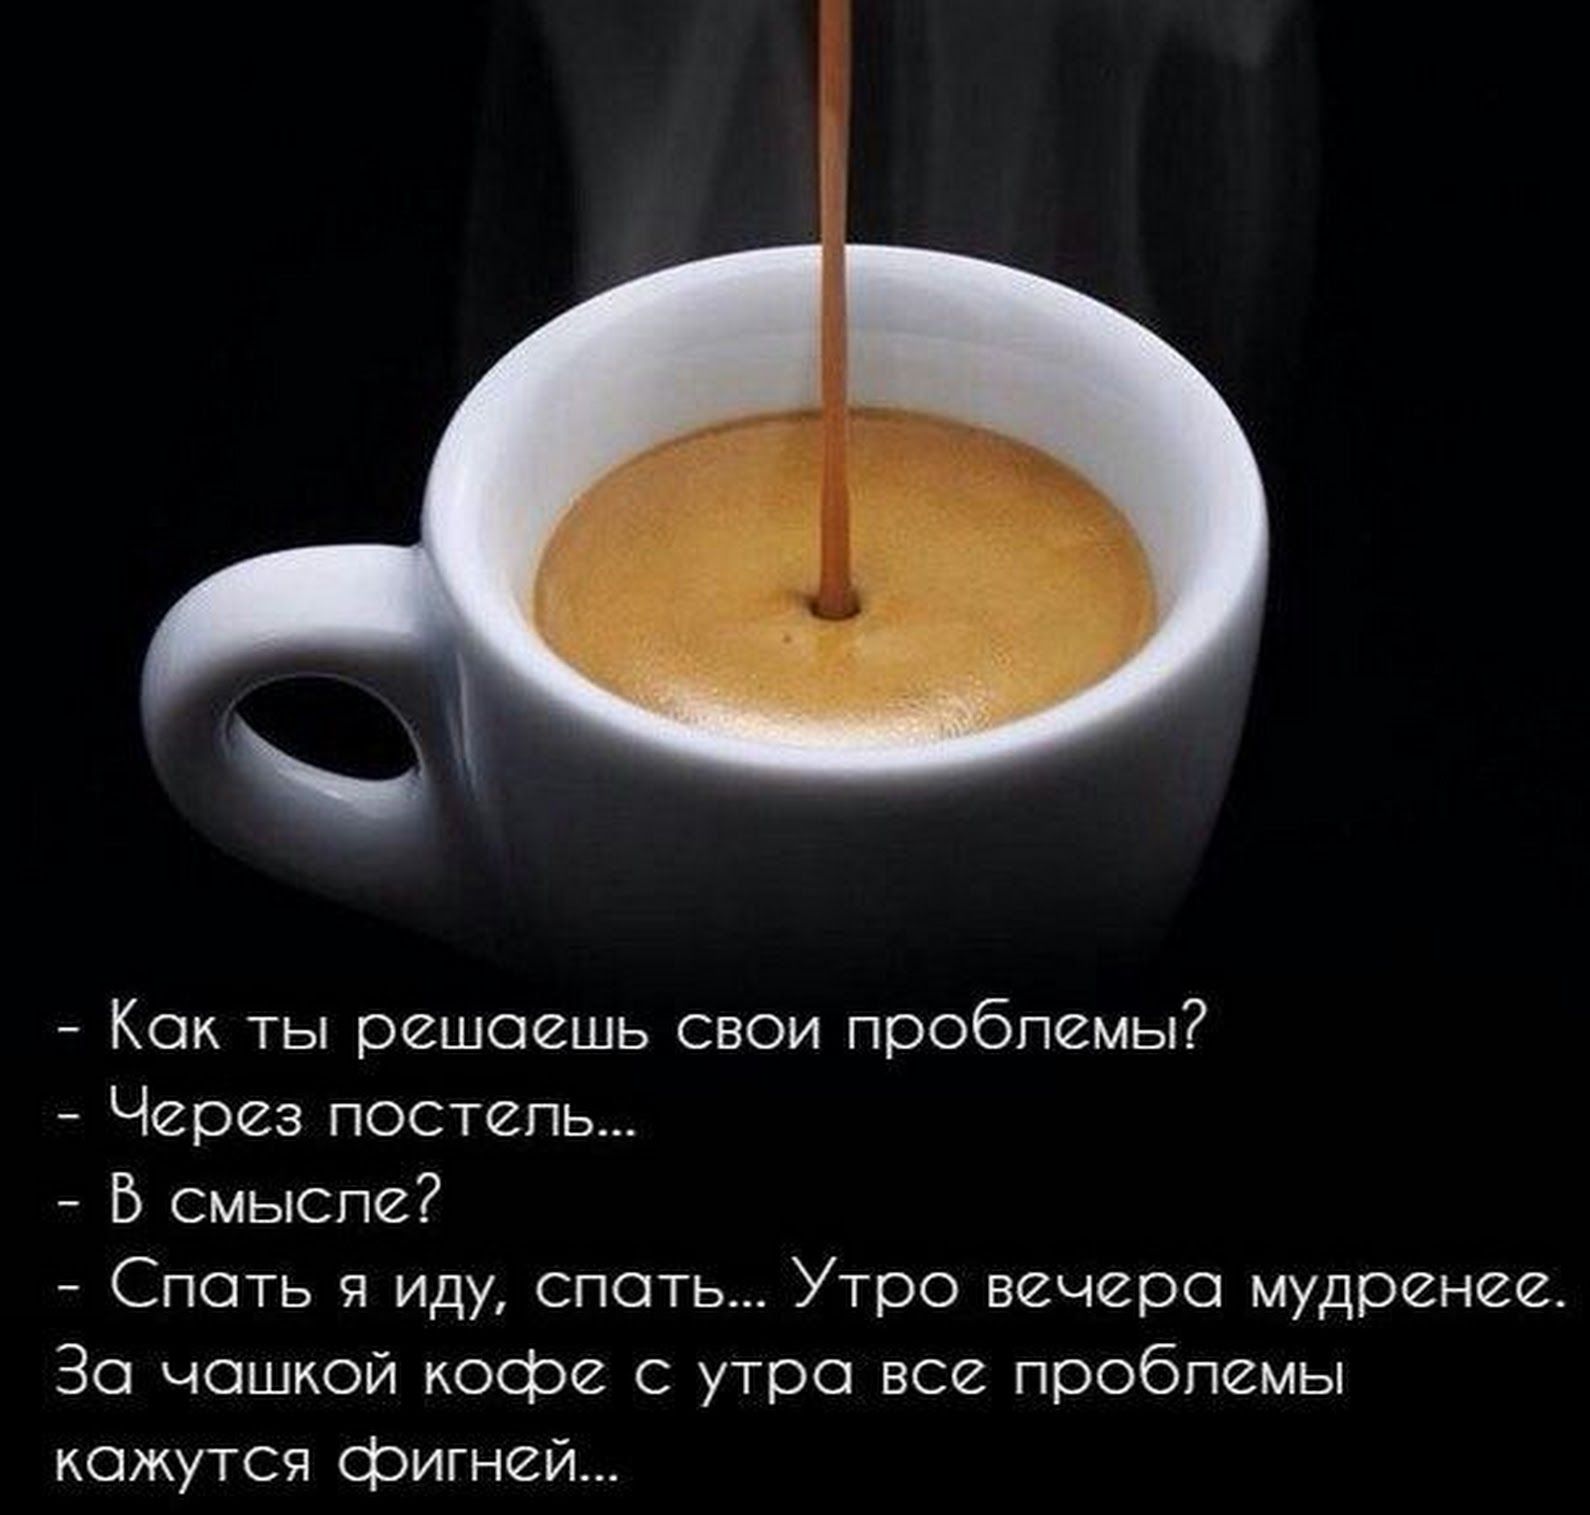 Статус на утро. Цитаты про кофе. Статусы про кофе. Цитаты про кофе и утро. Фразы про кофе.